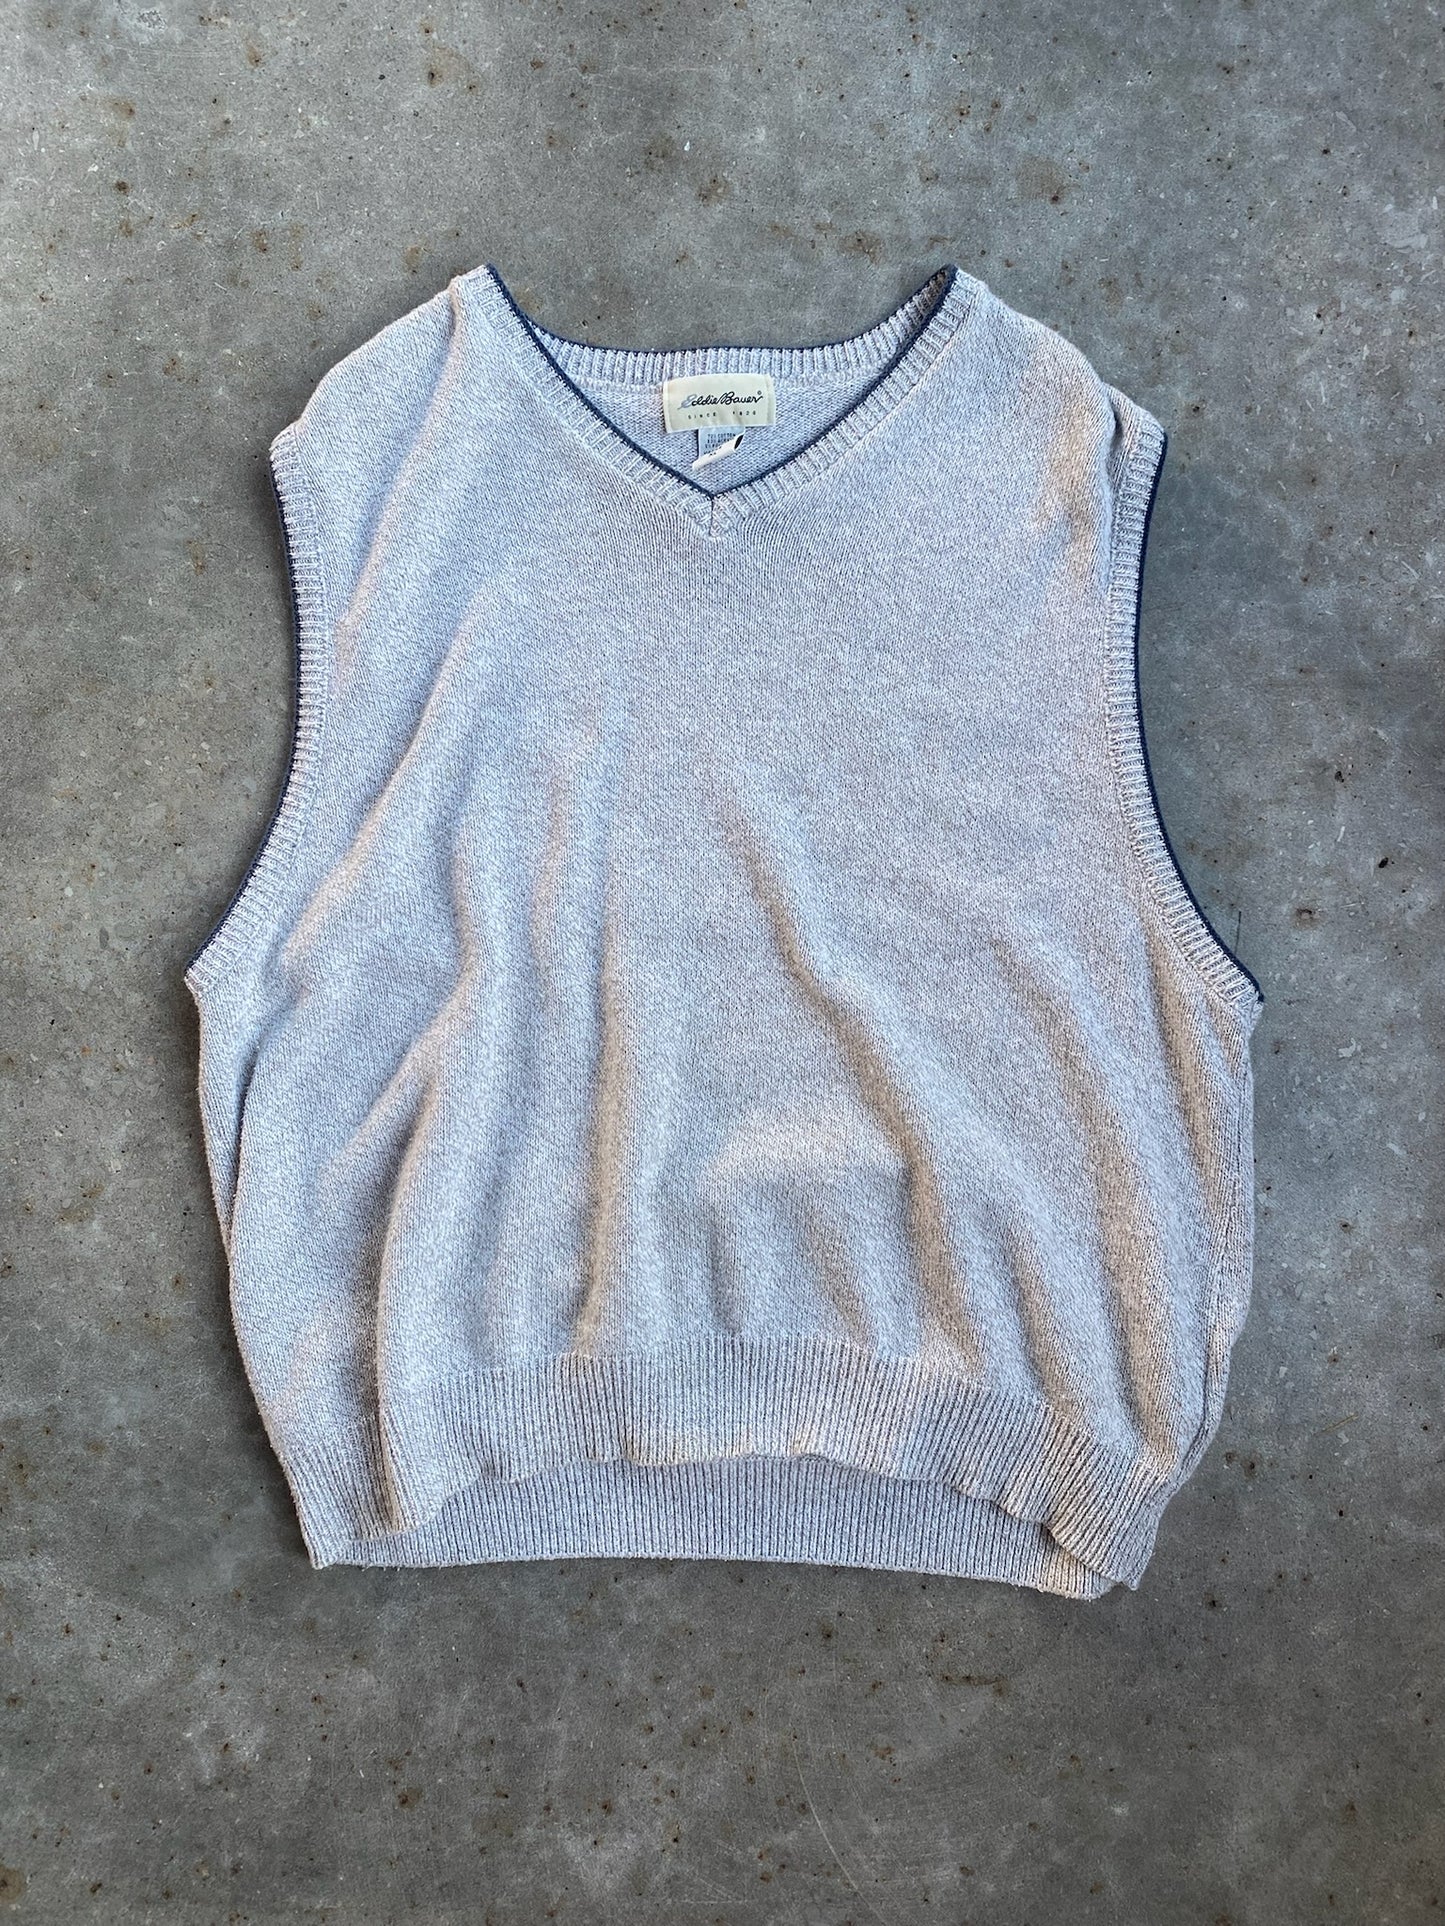 Vintage Eddie Bauer Sweater Vest - XL